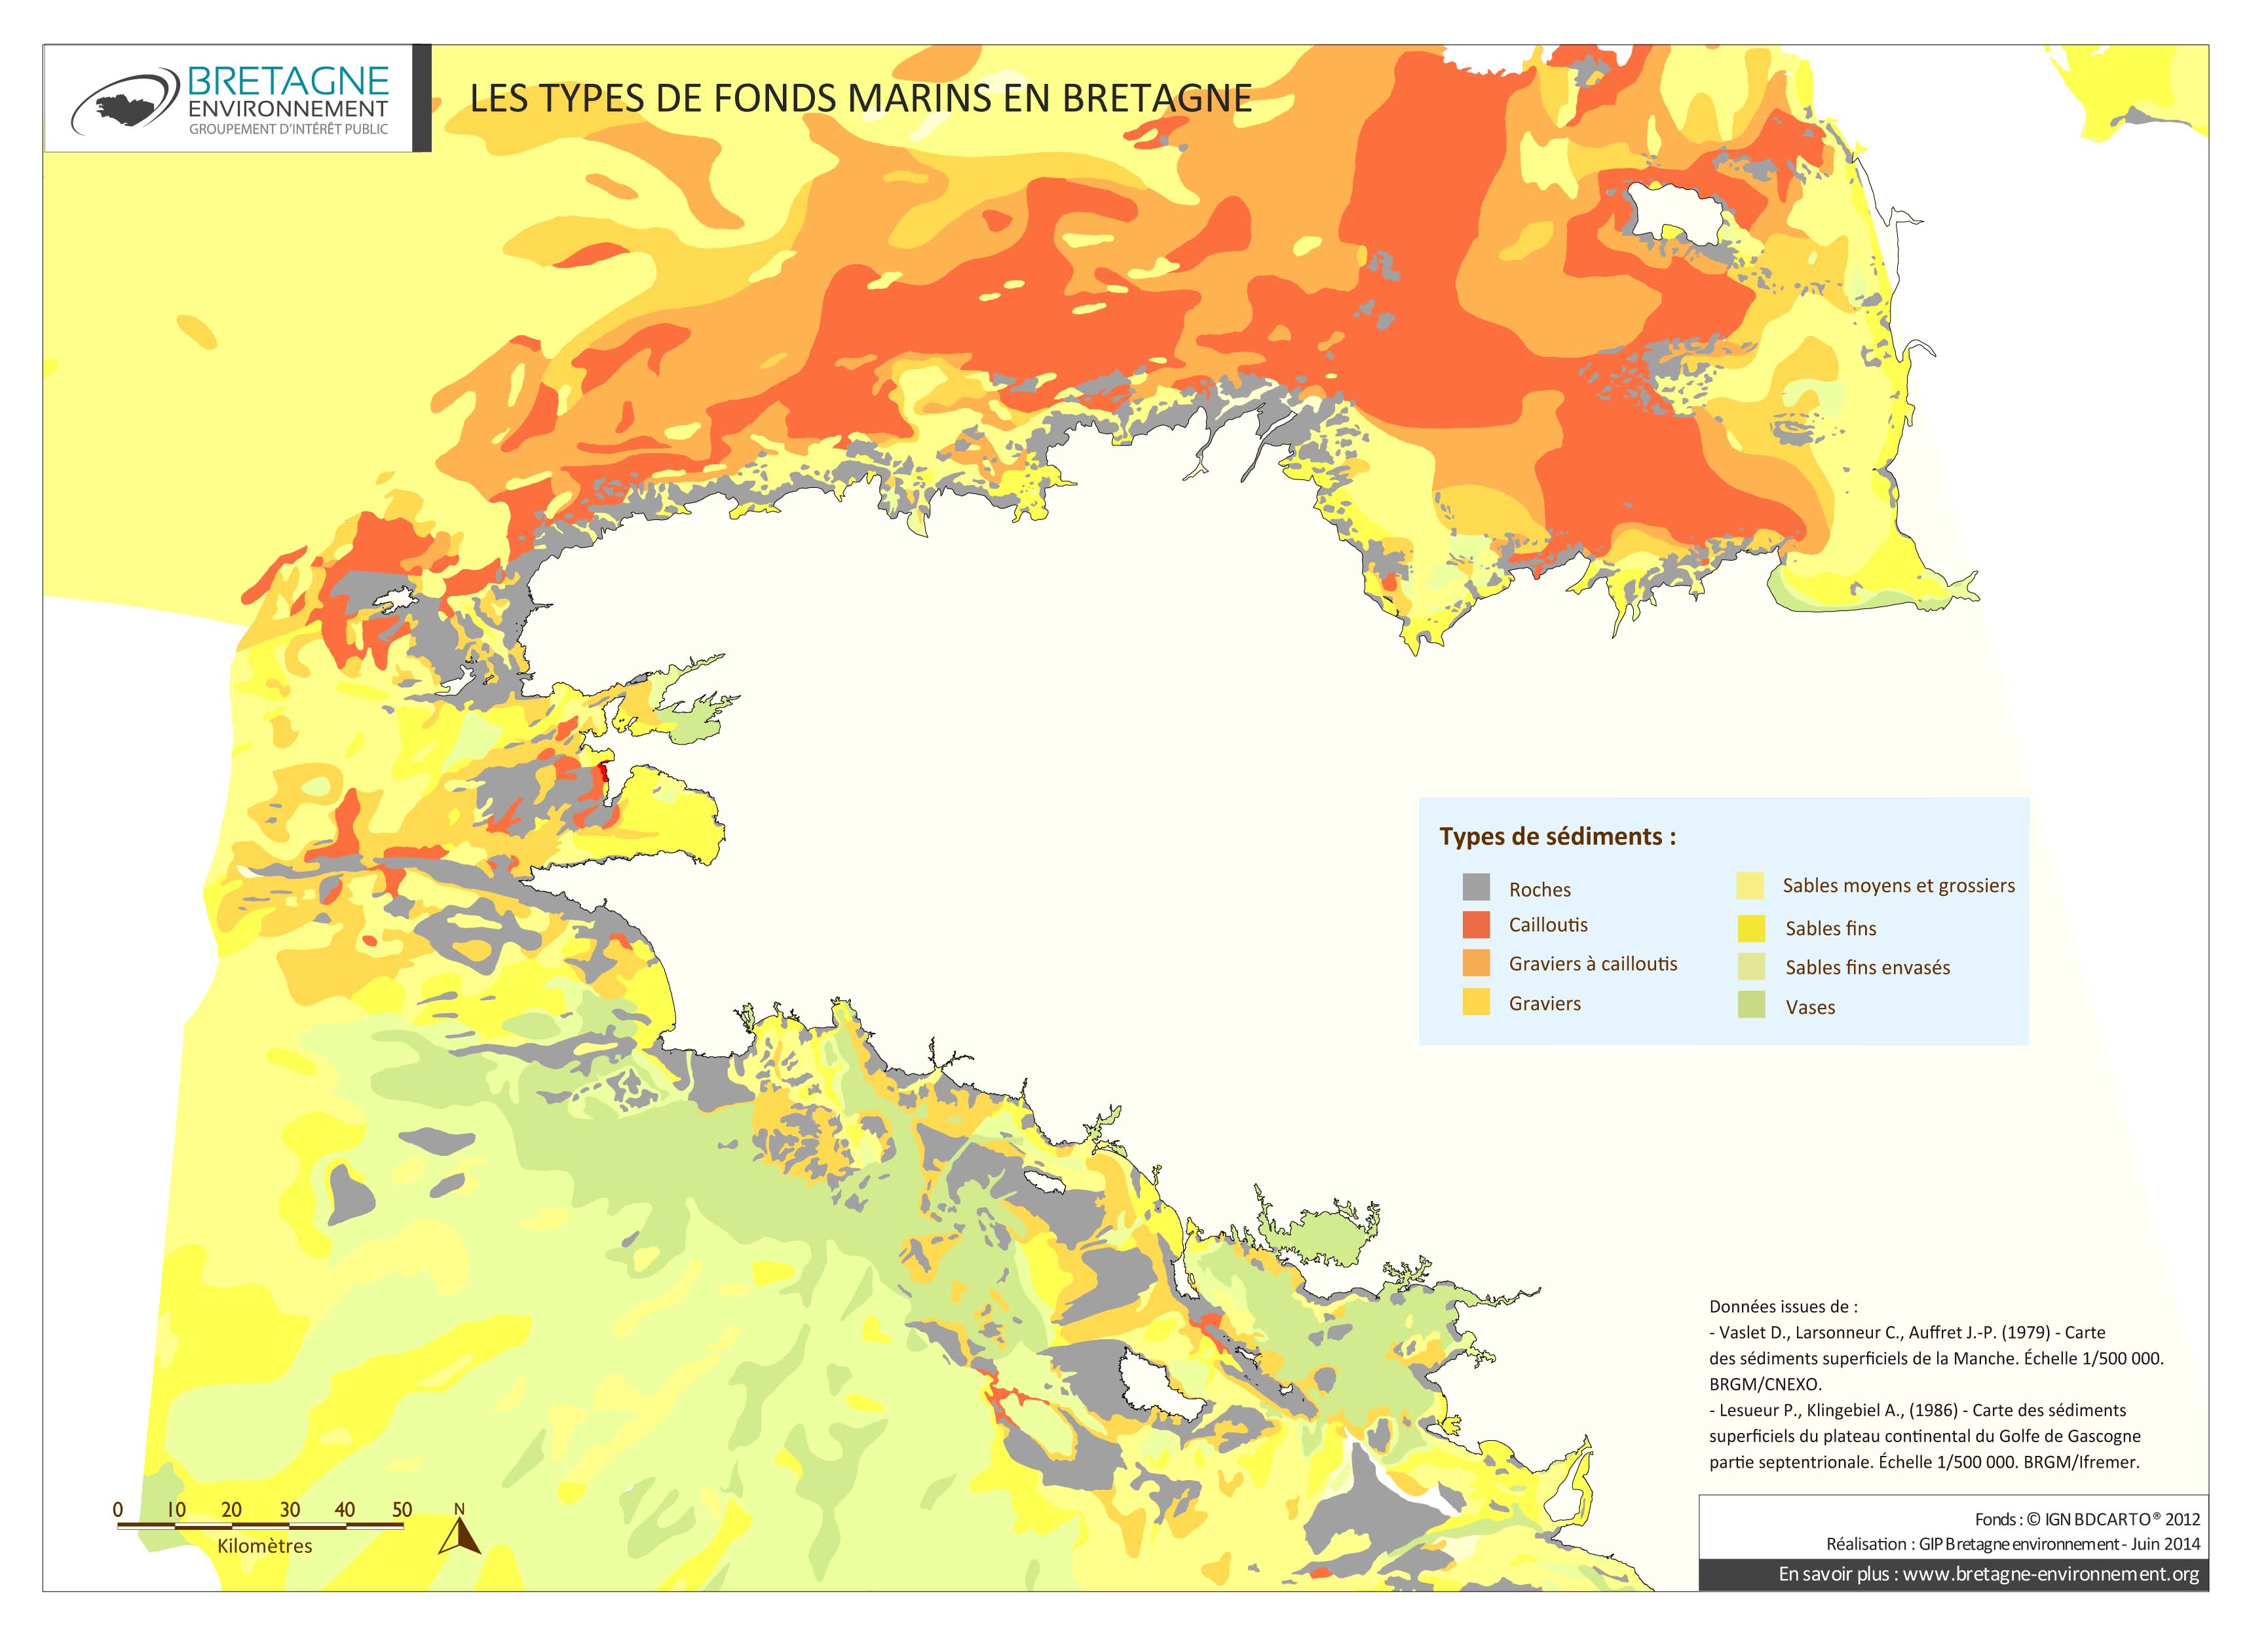 Les types de fonds marins en Bretagne